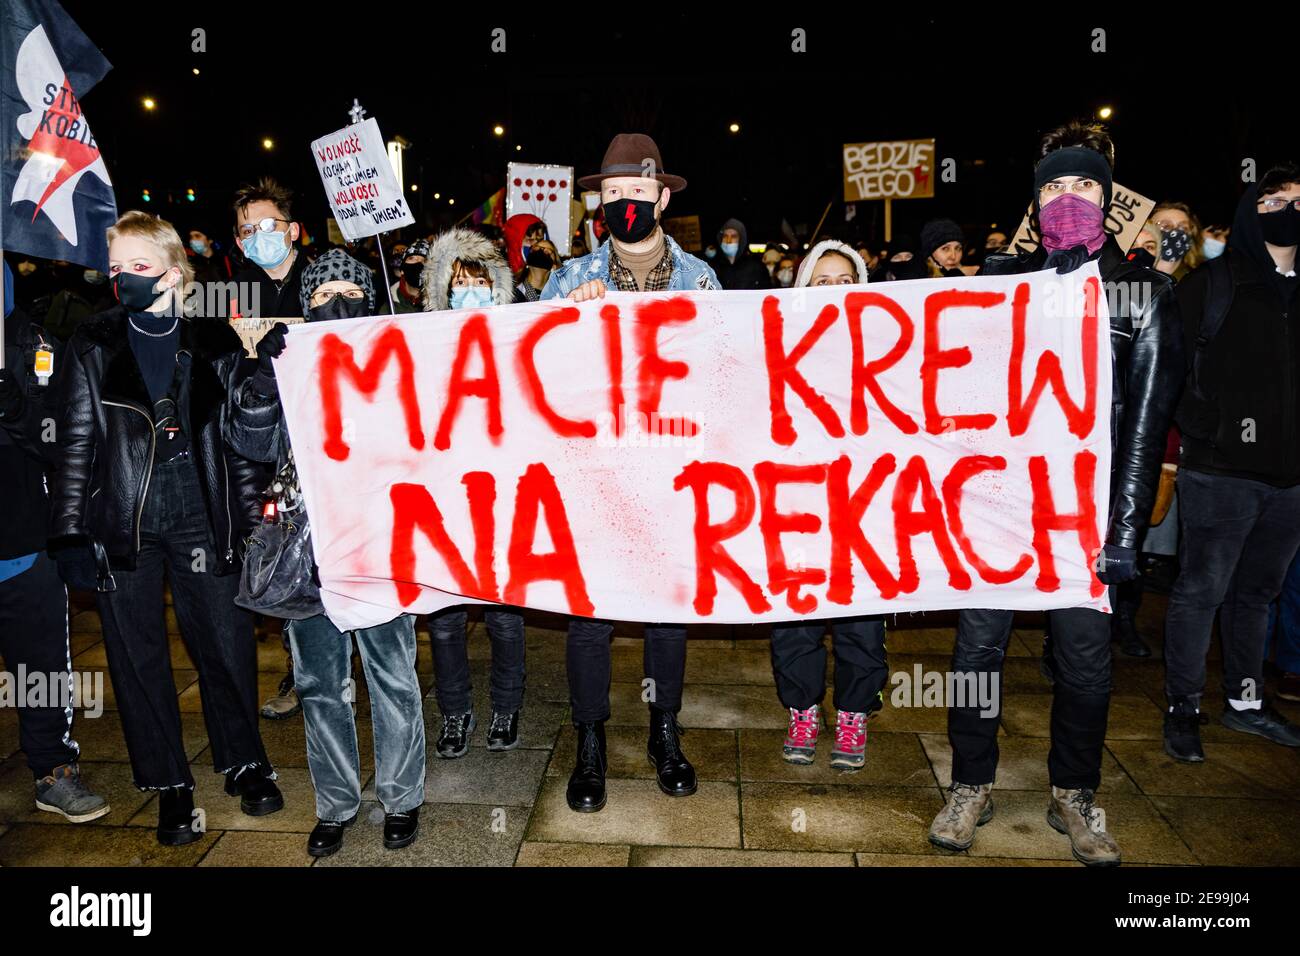 Demonstranten hielten während der Demonstrationen ein Transparent mit der Aufschrift "Sie haben Blut an den Händen".nach dem Urteil des polnischen Verfassungsgerichts, das am 27th. Januar in Kraft trat, um eines der restriktivsten Anti-Abtreibungsgesetze in Europa umzusetzen, gingen Hunderte von Polen in allen größeren Städten auf die Straße. Die Proteste wurden vom Frauenstreik organisiert. Stockfoto